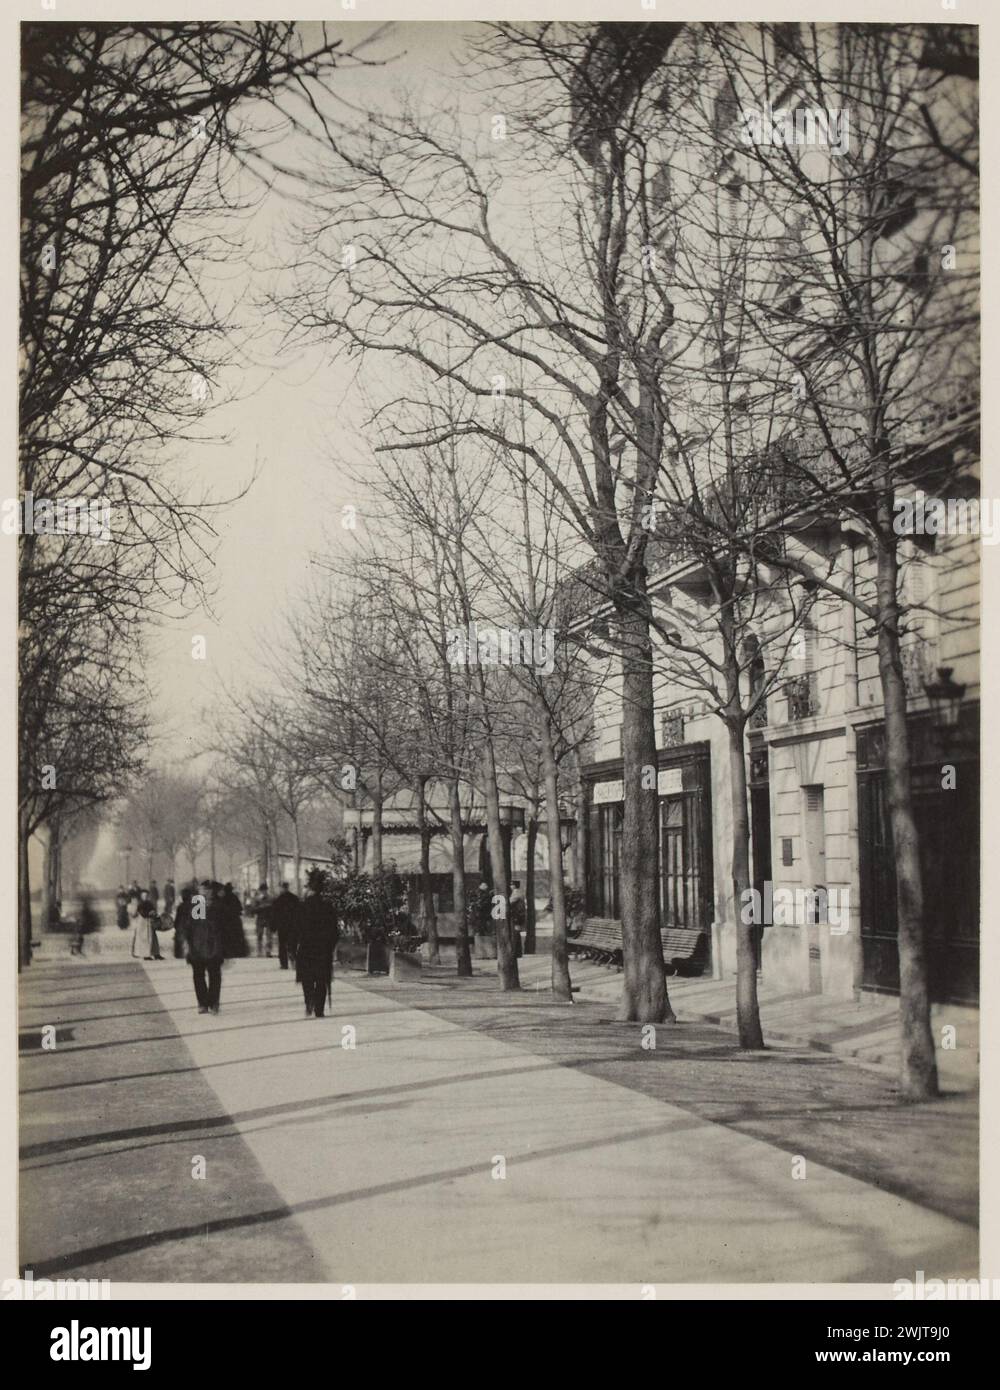 Blancard, Hippolyte (1843 - D.1924), walkers on the avenue de l'Observatoire, 6th arrondissement, Paris (dummy title), 1890. Platinum draw. Carnavalet museum, history of Paris. Stock Photo